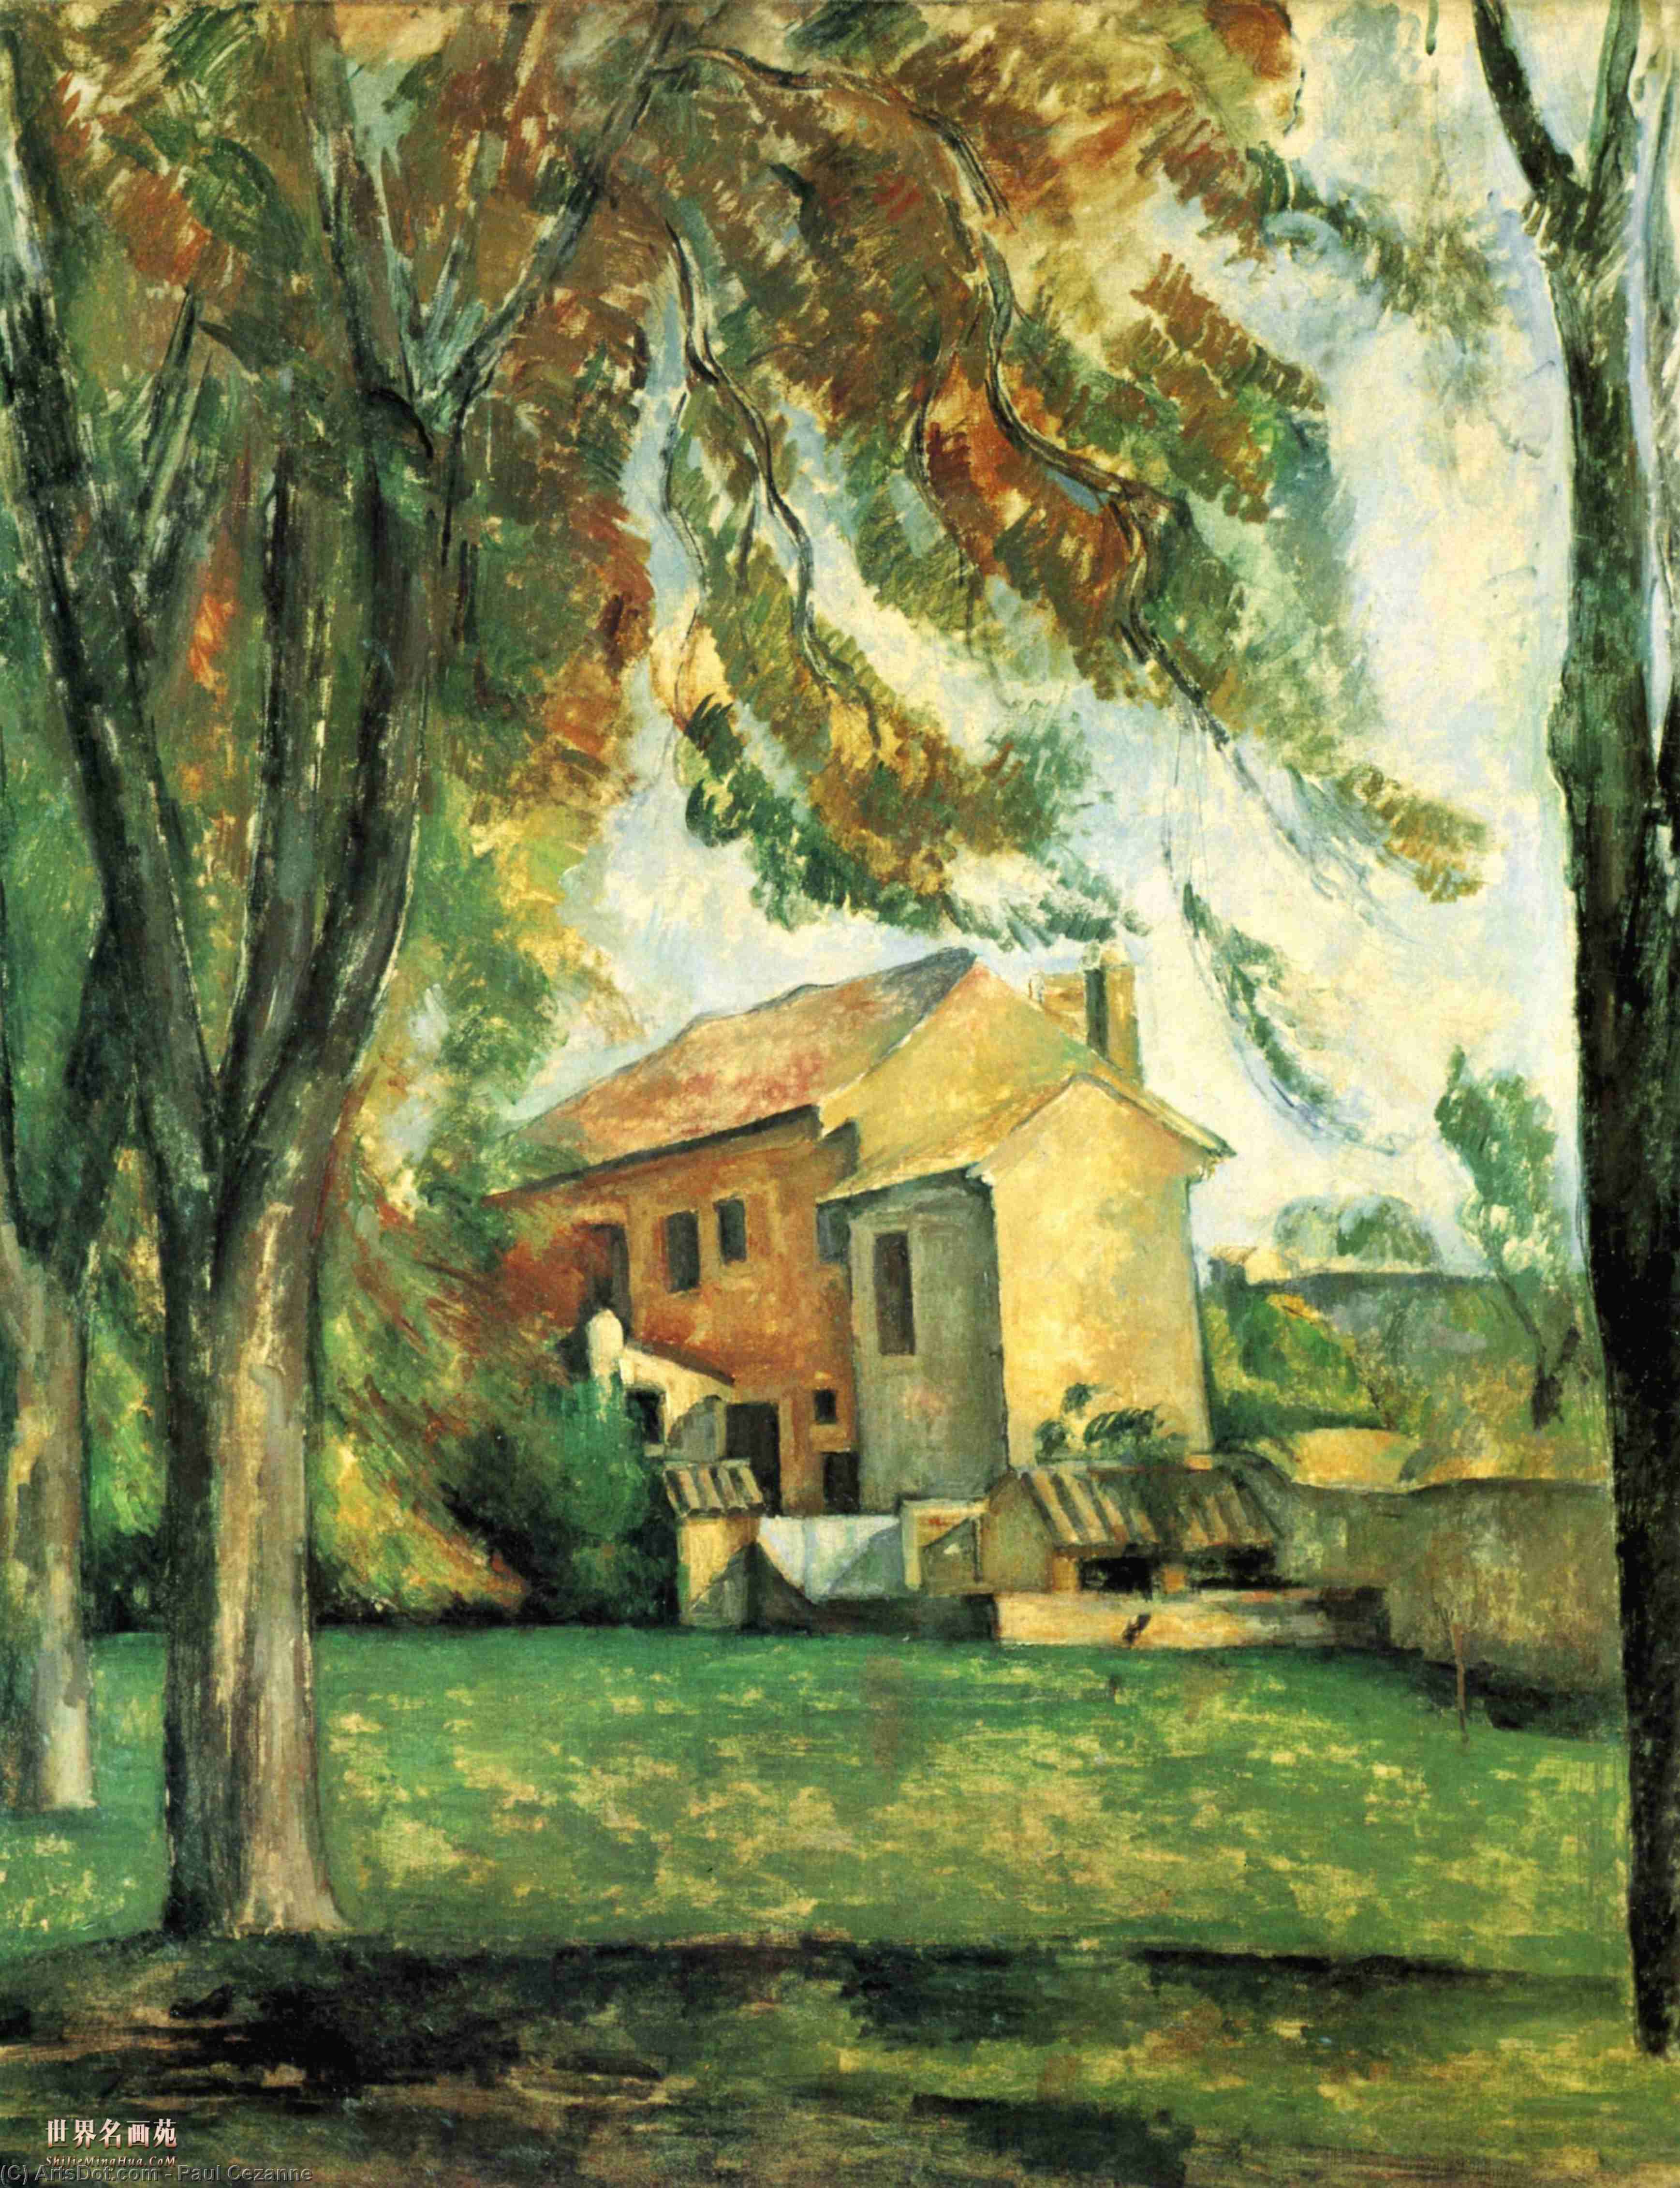 WikiOO.org - Encyclopedia of Fine Arts - Maleri, Artwork Paul Cezanne - The pond of the Jas de Bouffan